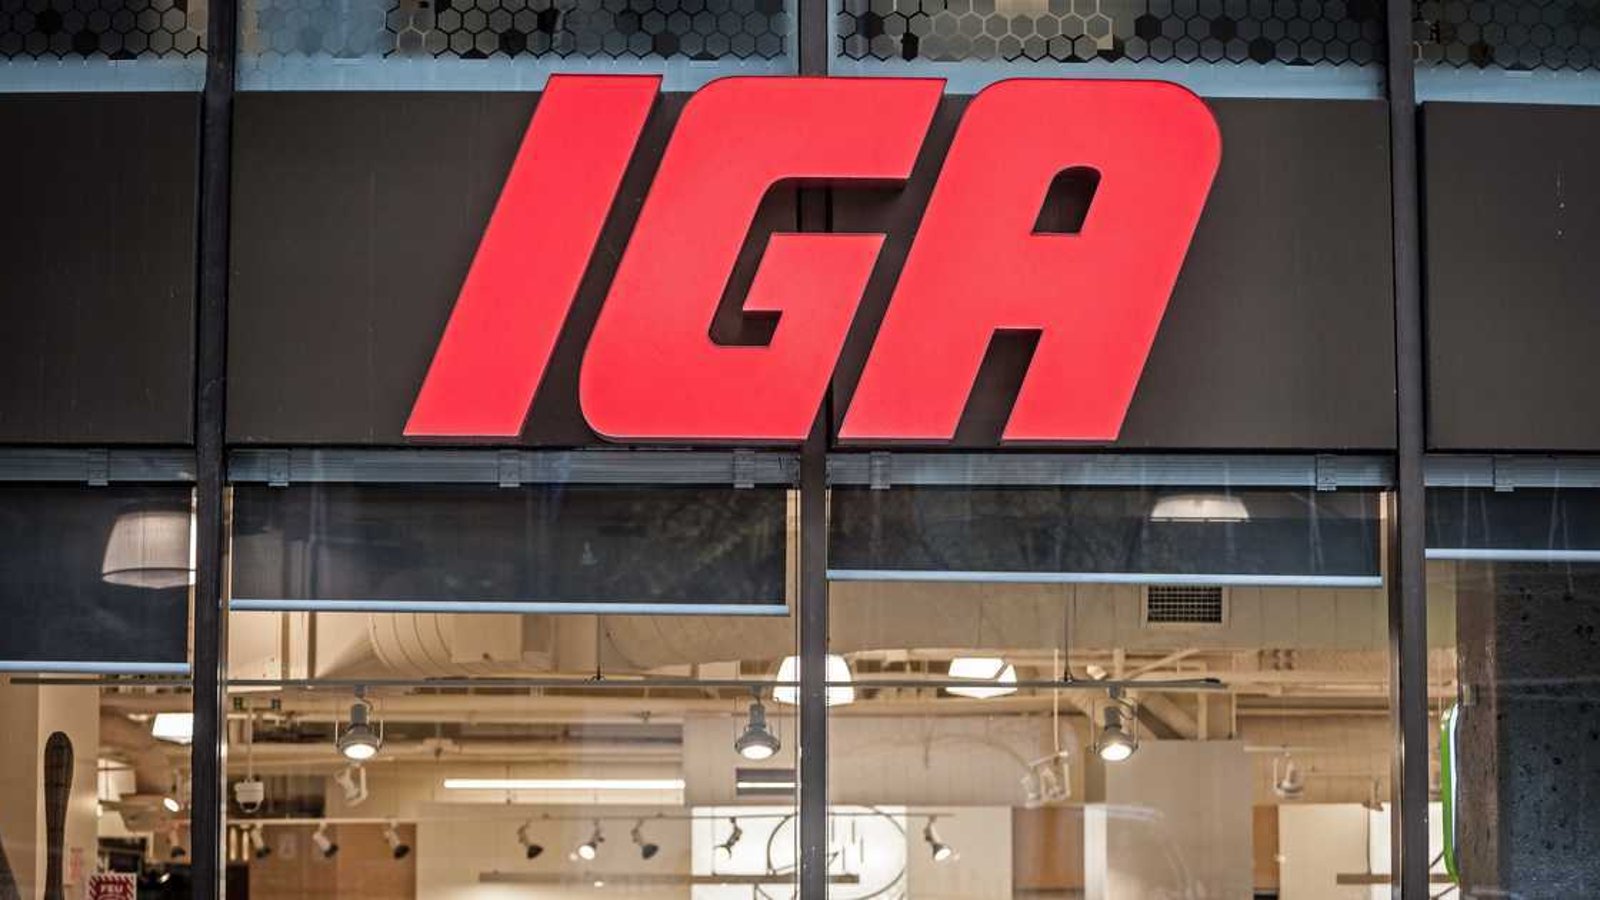 Les marchés IGA du Québec offrent maintenant aux acheteurs jusqu'à 60% de réduction sur les invendus